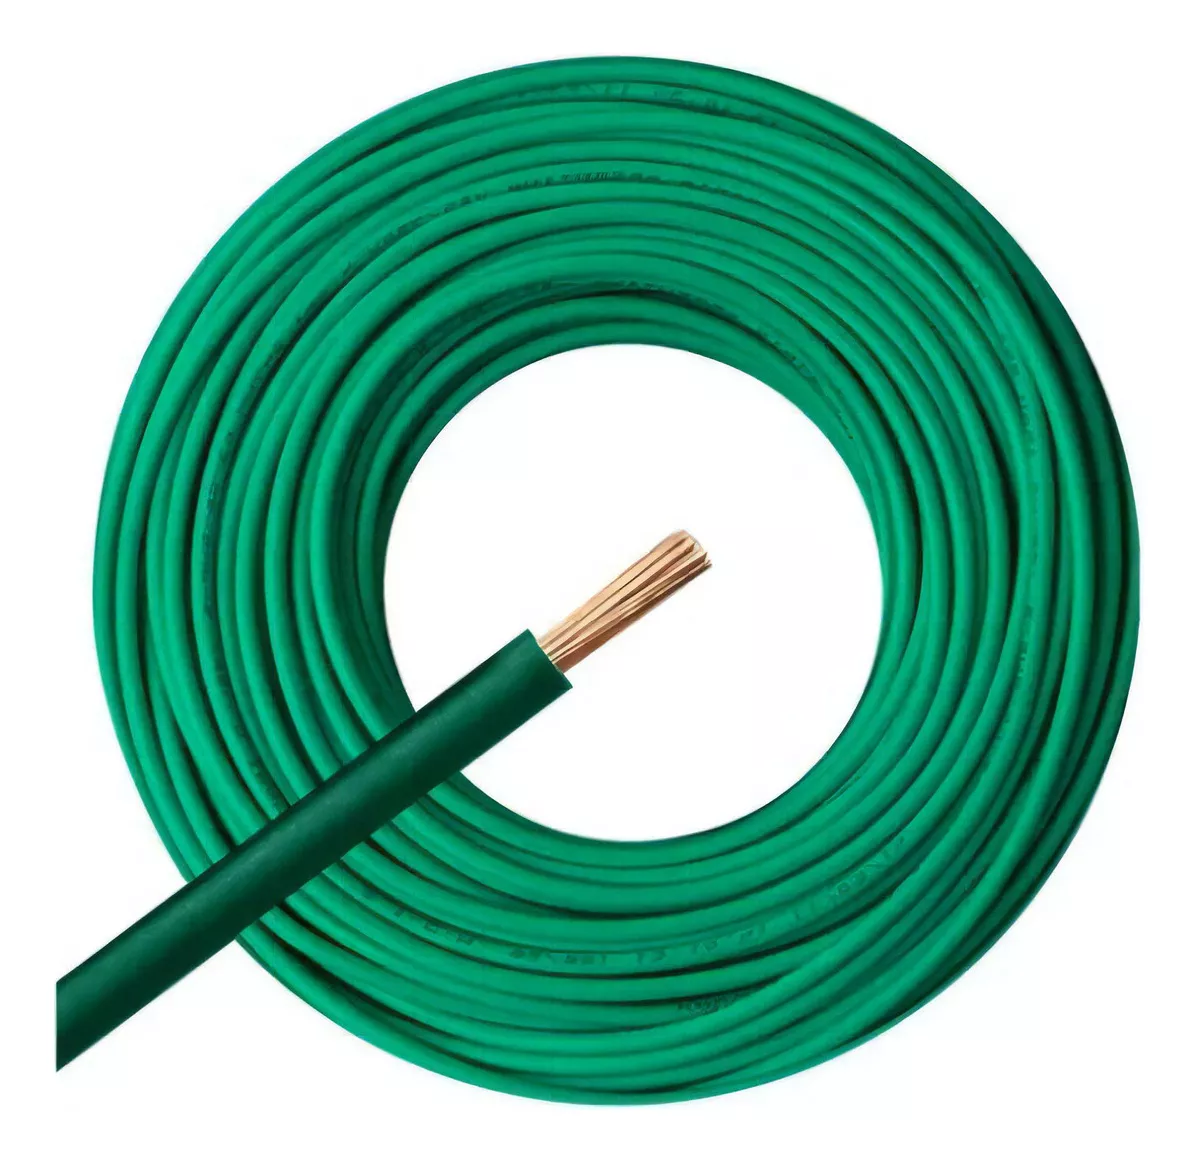 Primera imagen para búsqueda de cable 2 5 mm normalizado electricidad cables unipolares